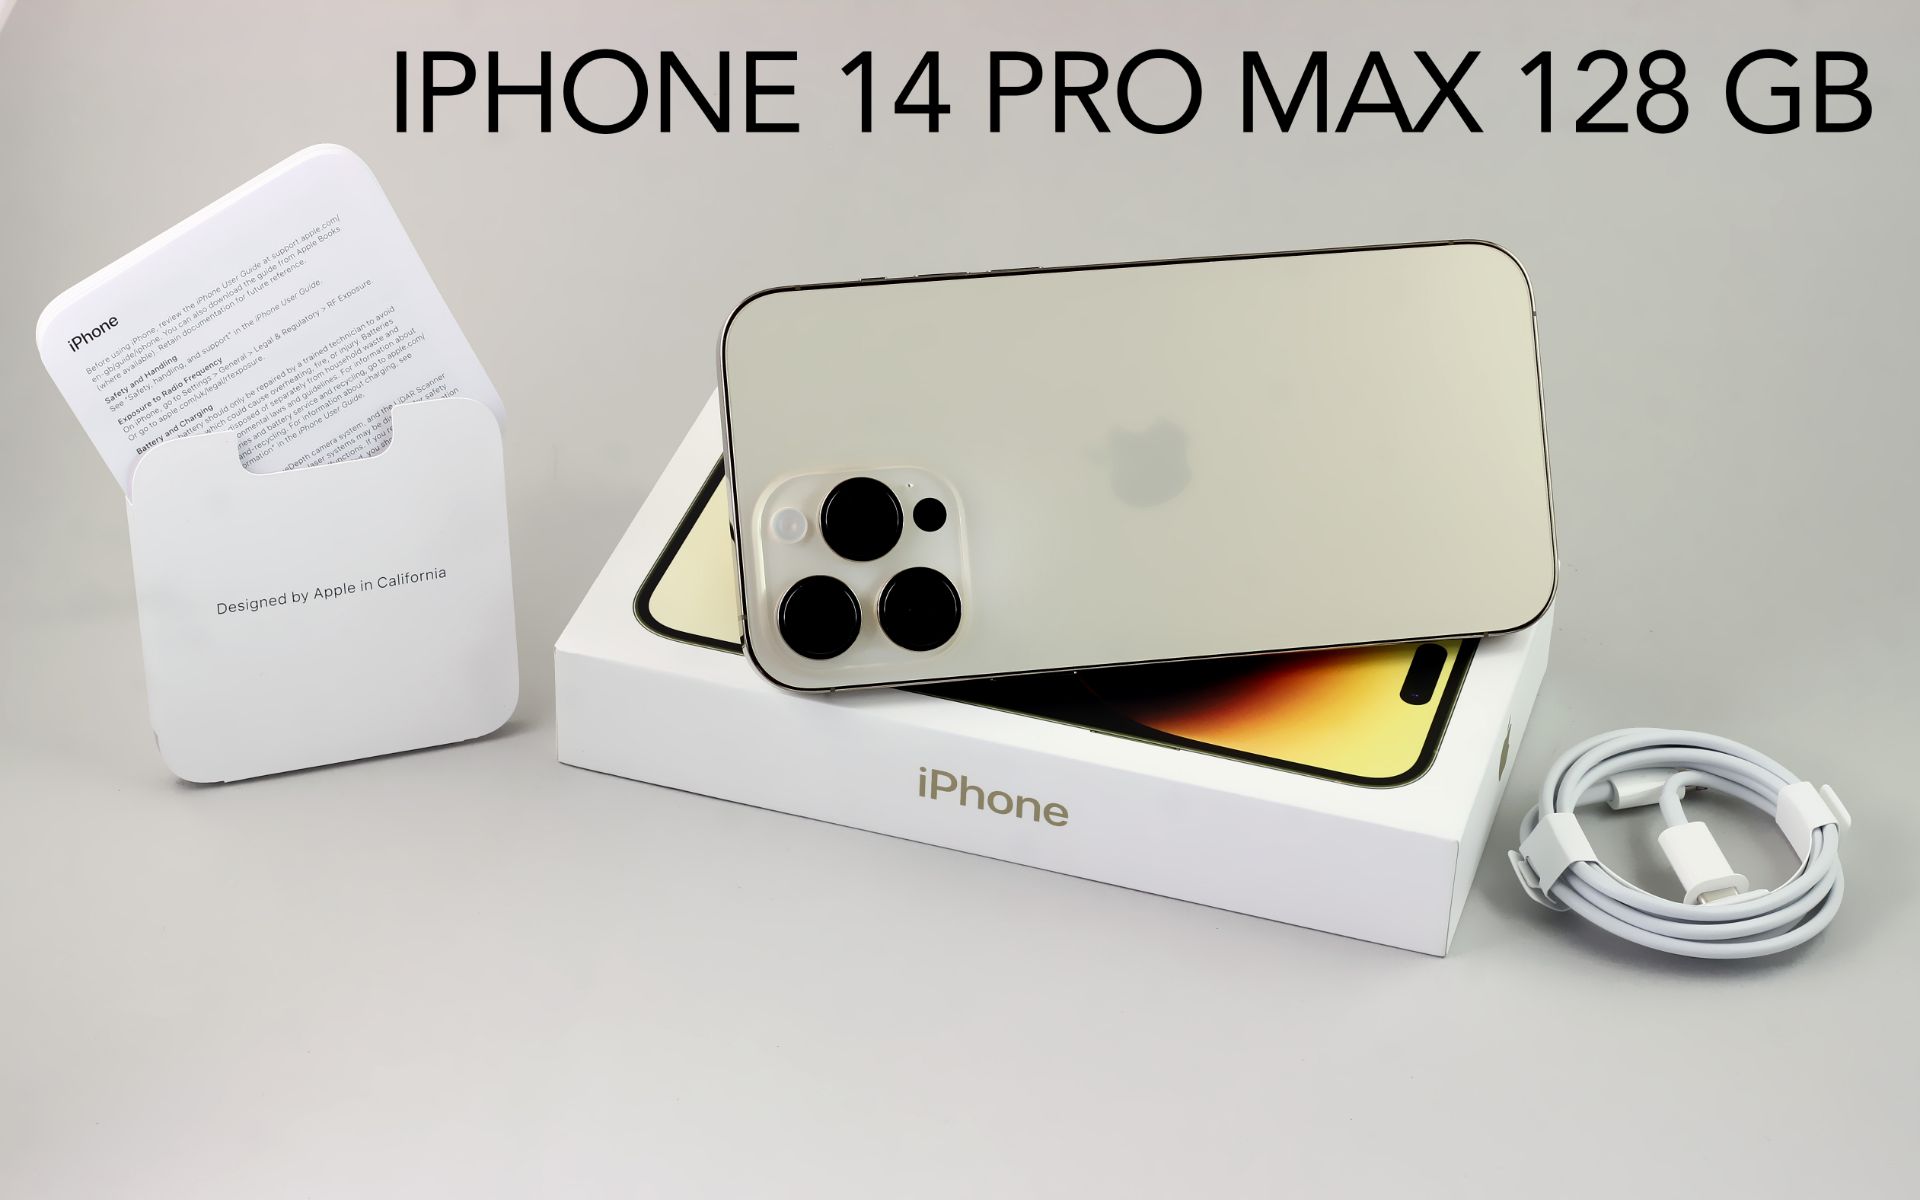 Iphone 14 Pro Max 128GB mit Box und Zubehoer. Farbe: Gold